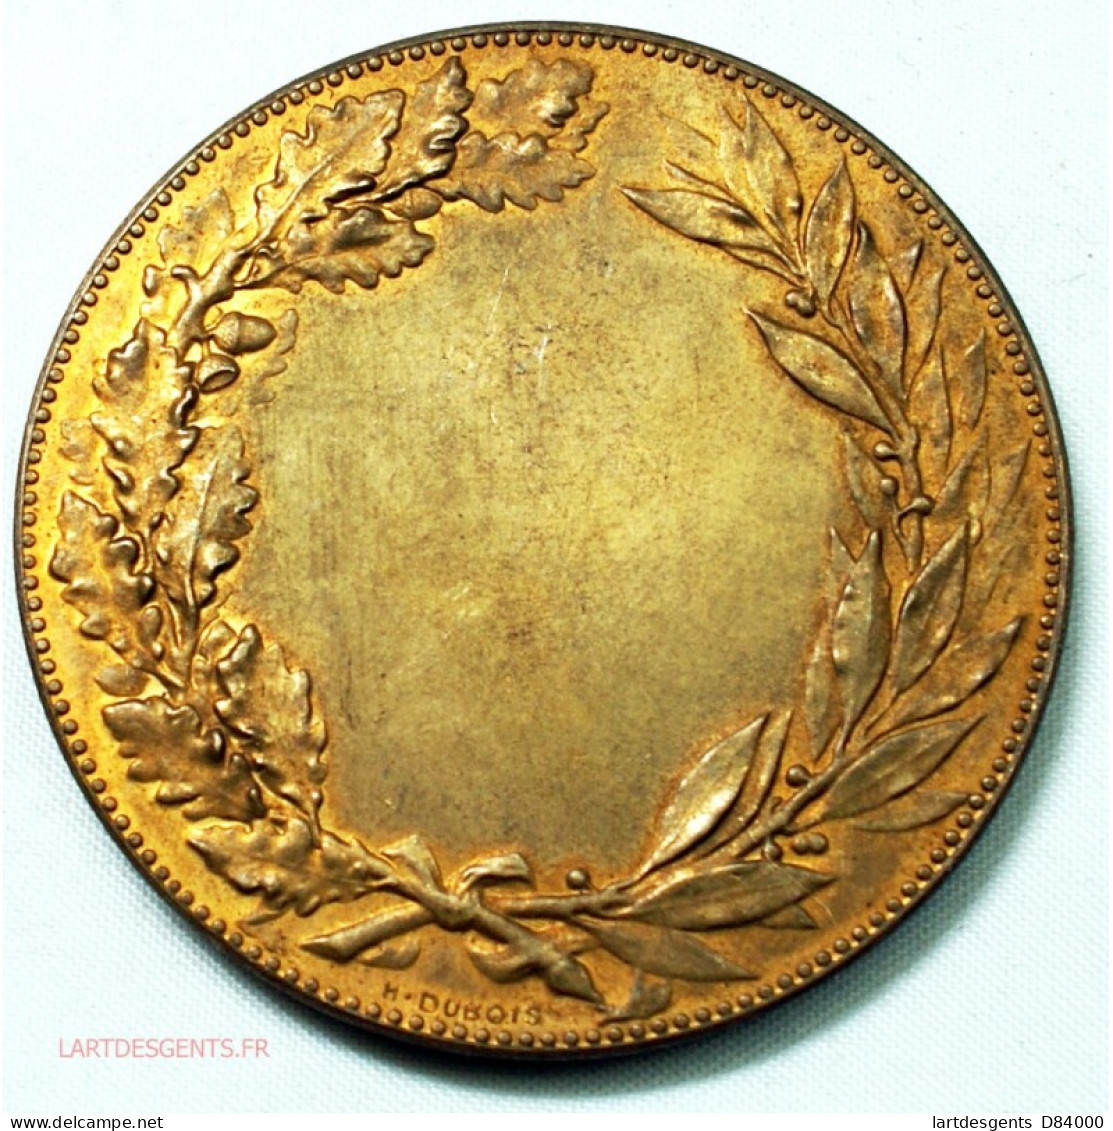 Médaille IN EO PATRIA SPES 1894 Par A. BORREL, Lartdesgents - Firmen